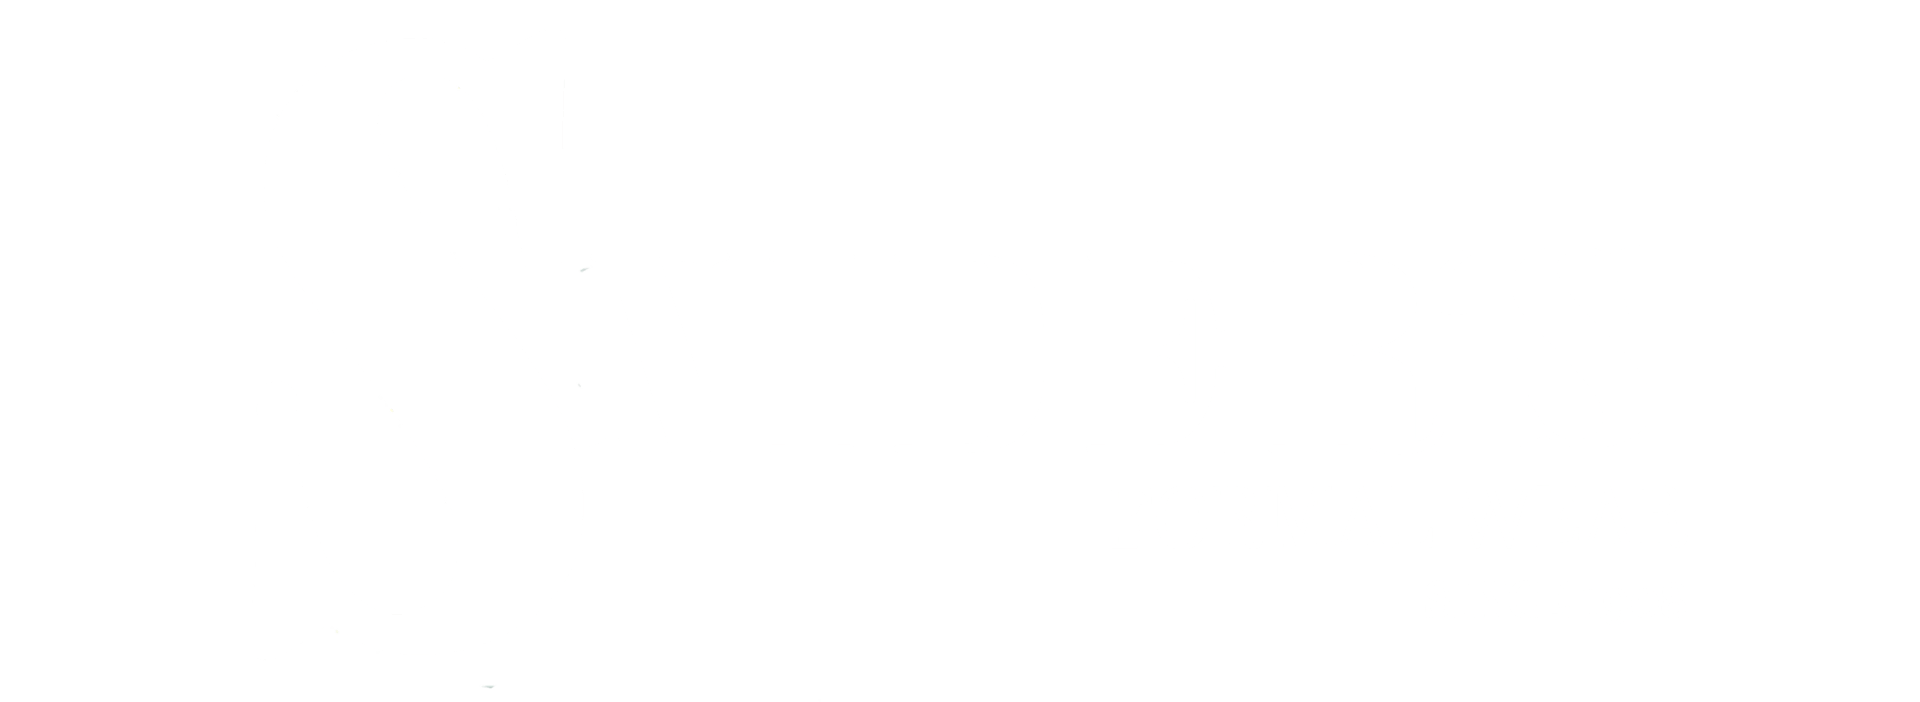 Snider's Formal Wear logo